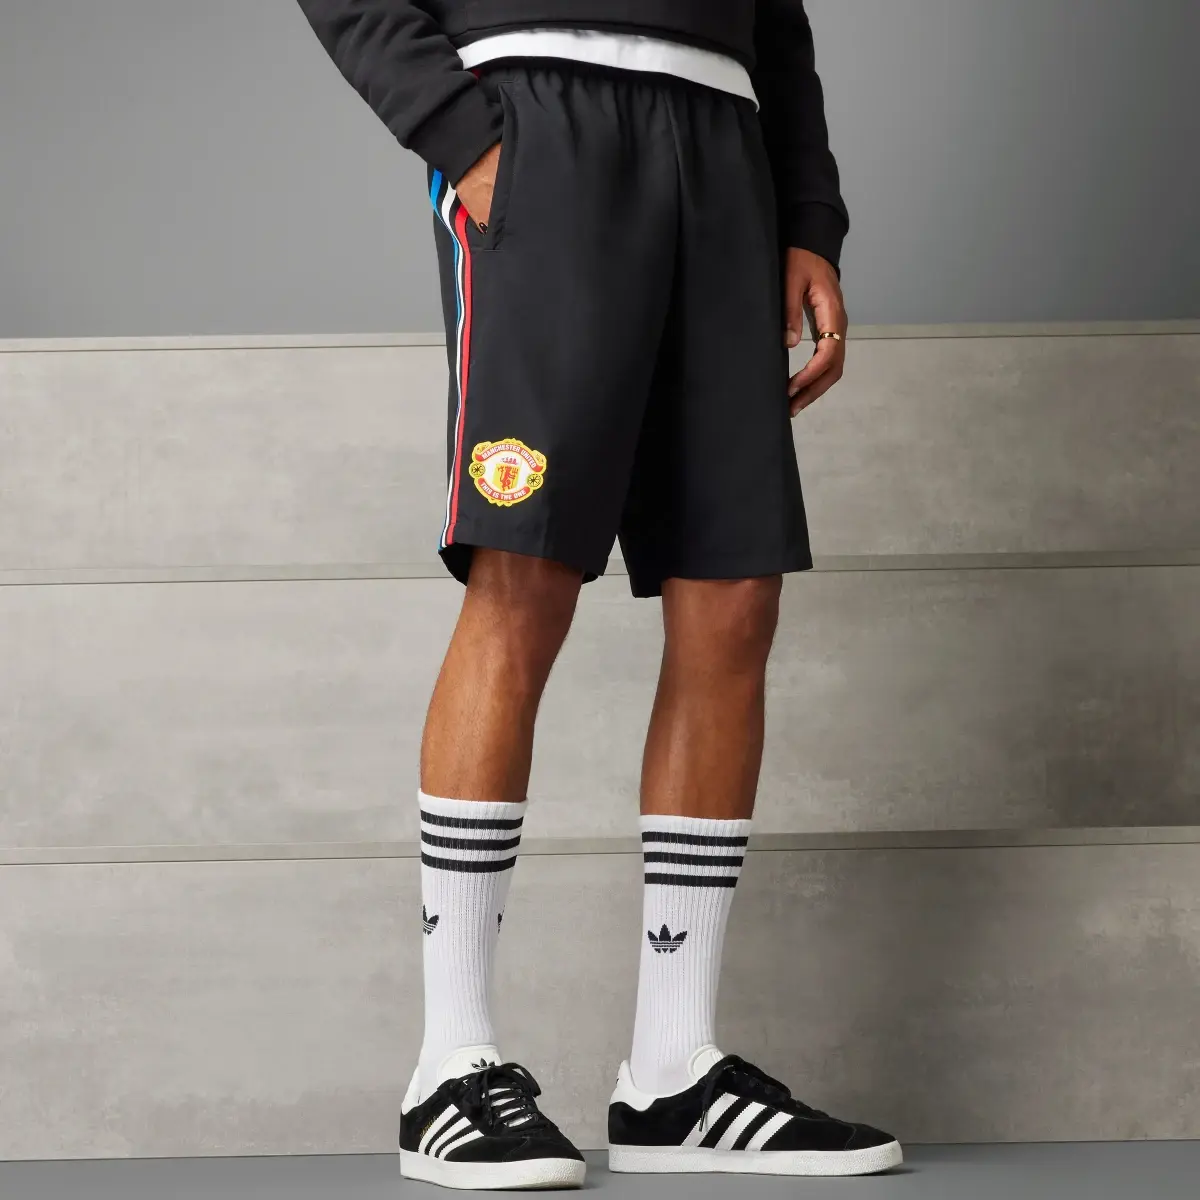 Adidas Short Manchester United Stone Roses Originals. 1